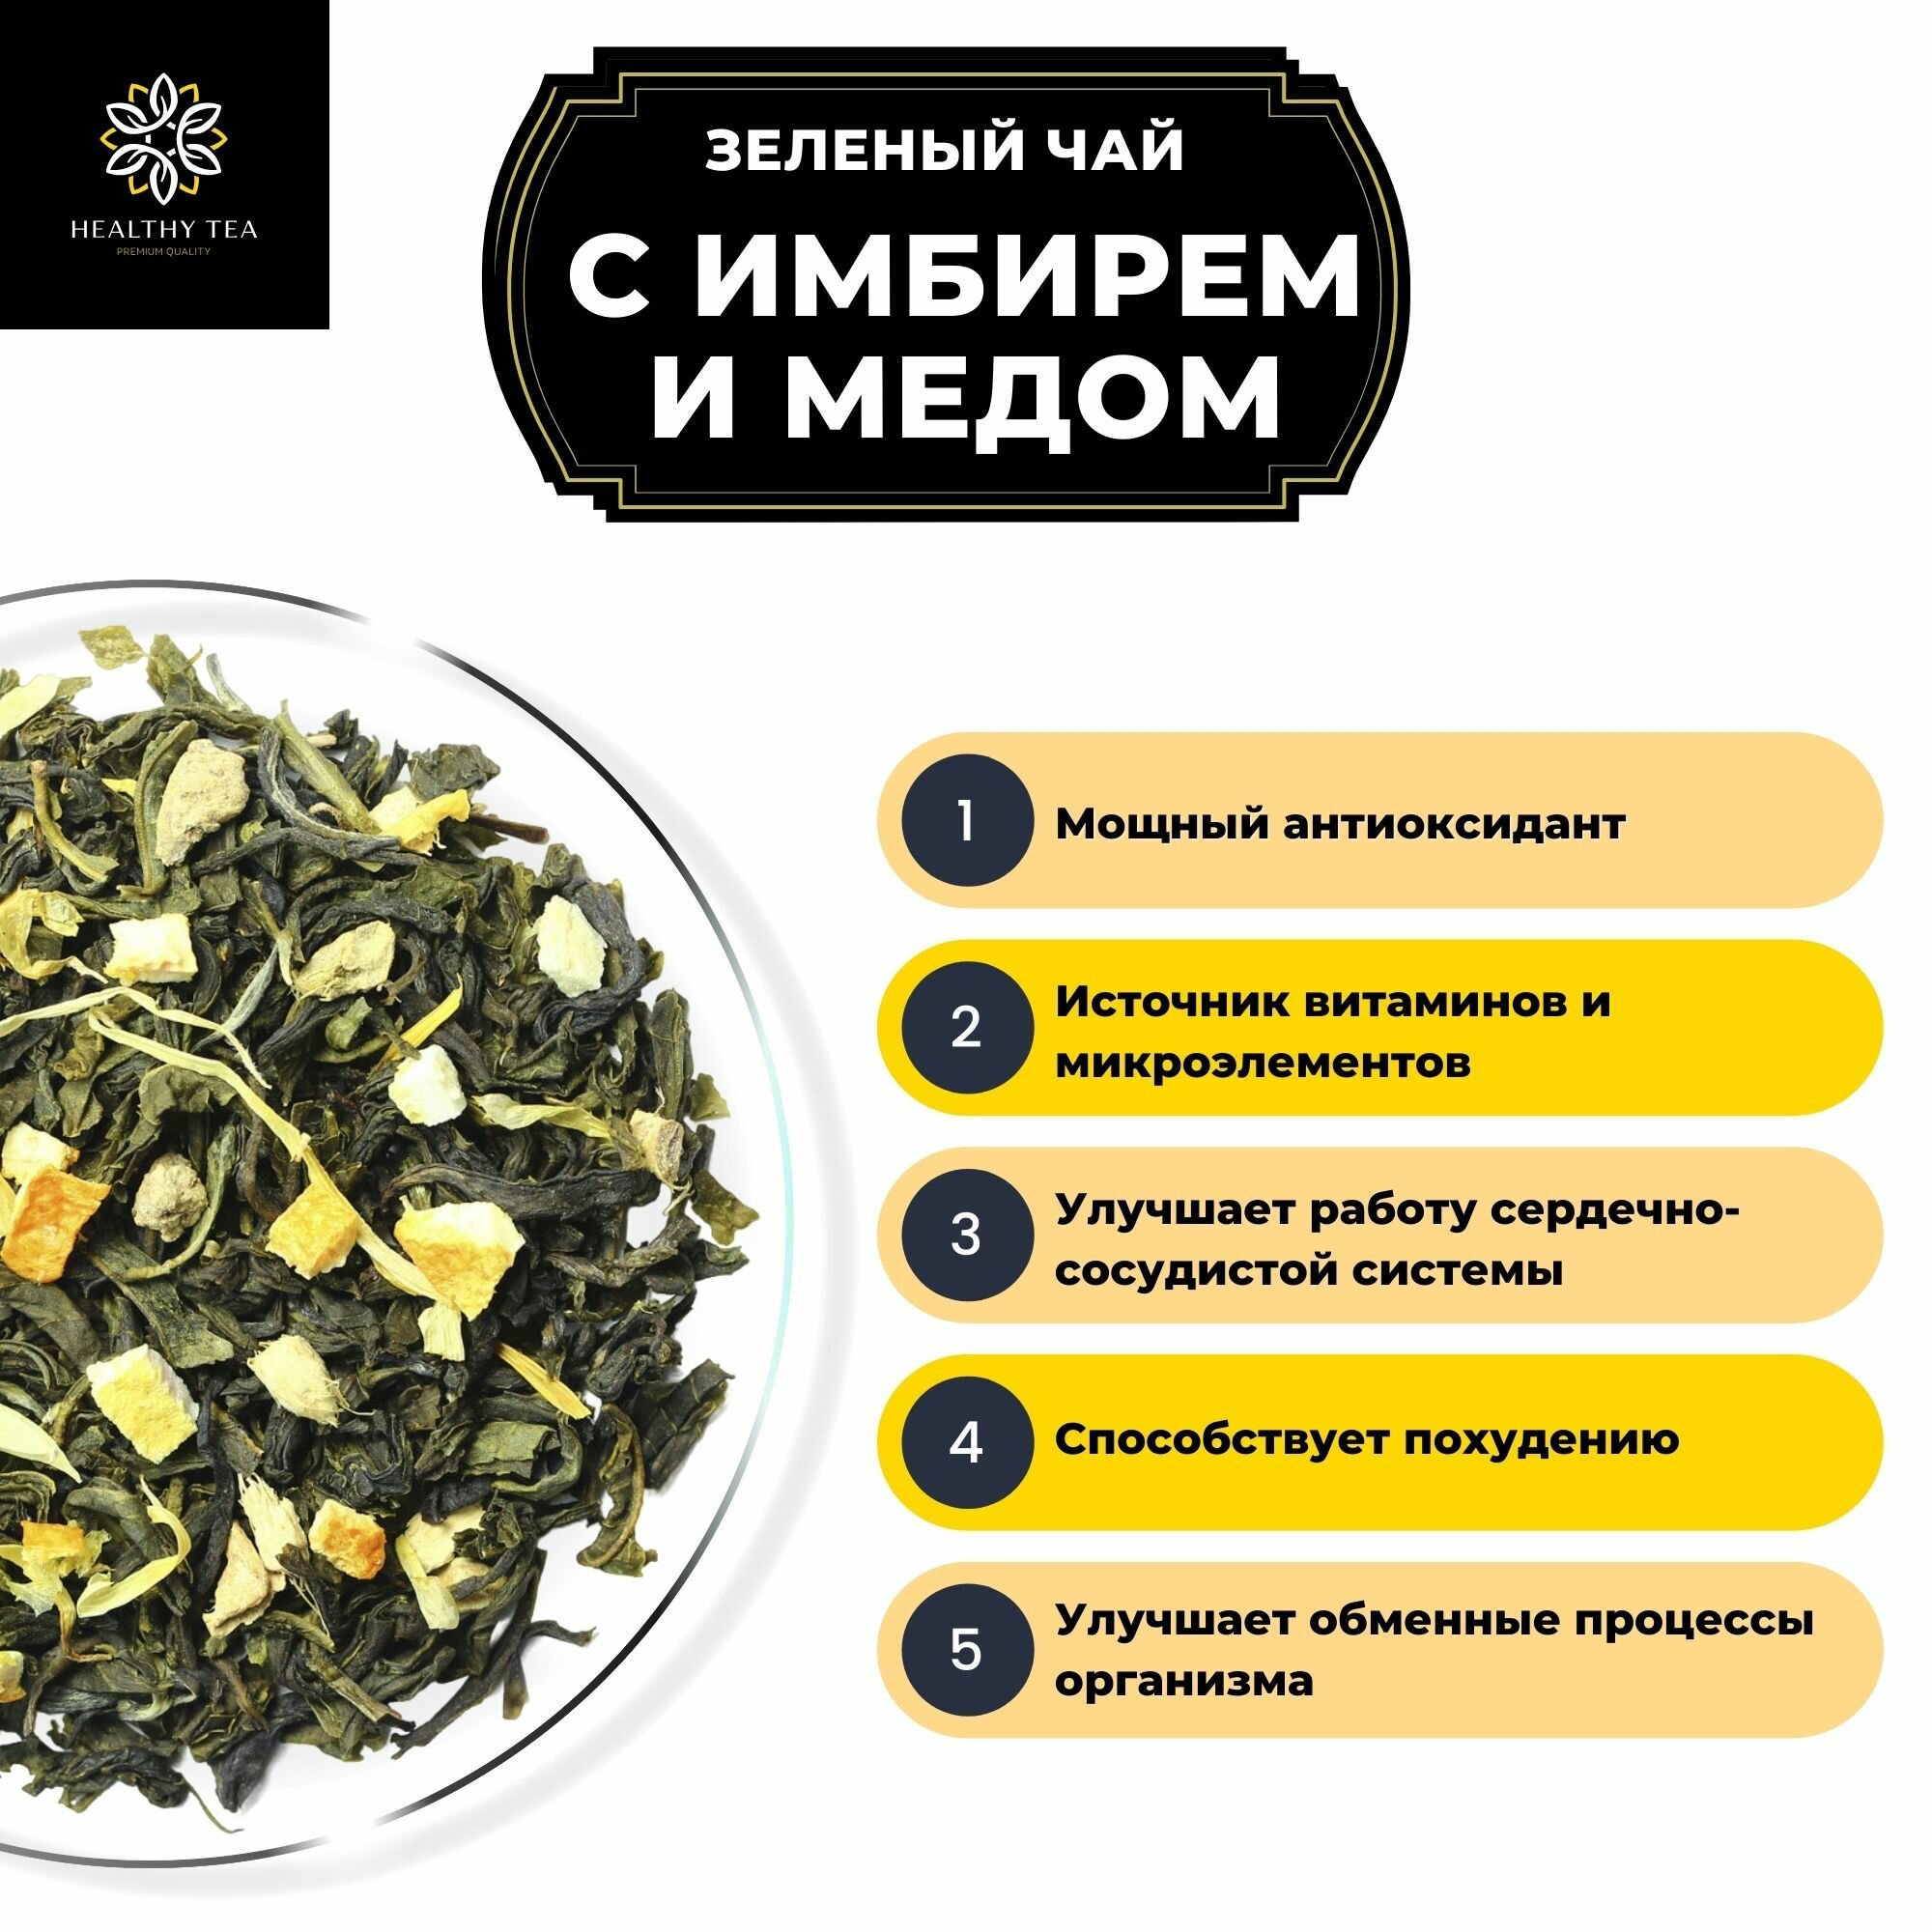 Китайский Зеленый чай с имбирем, лимоном и апельсином Имбирь-Мед Полезный чай / HEALTHY TEA, 100 г